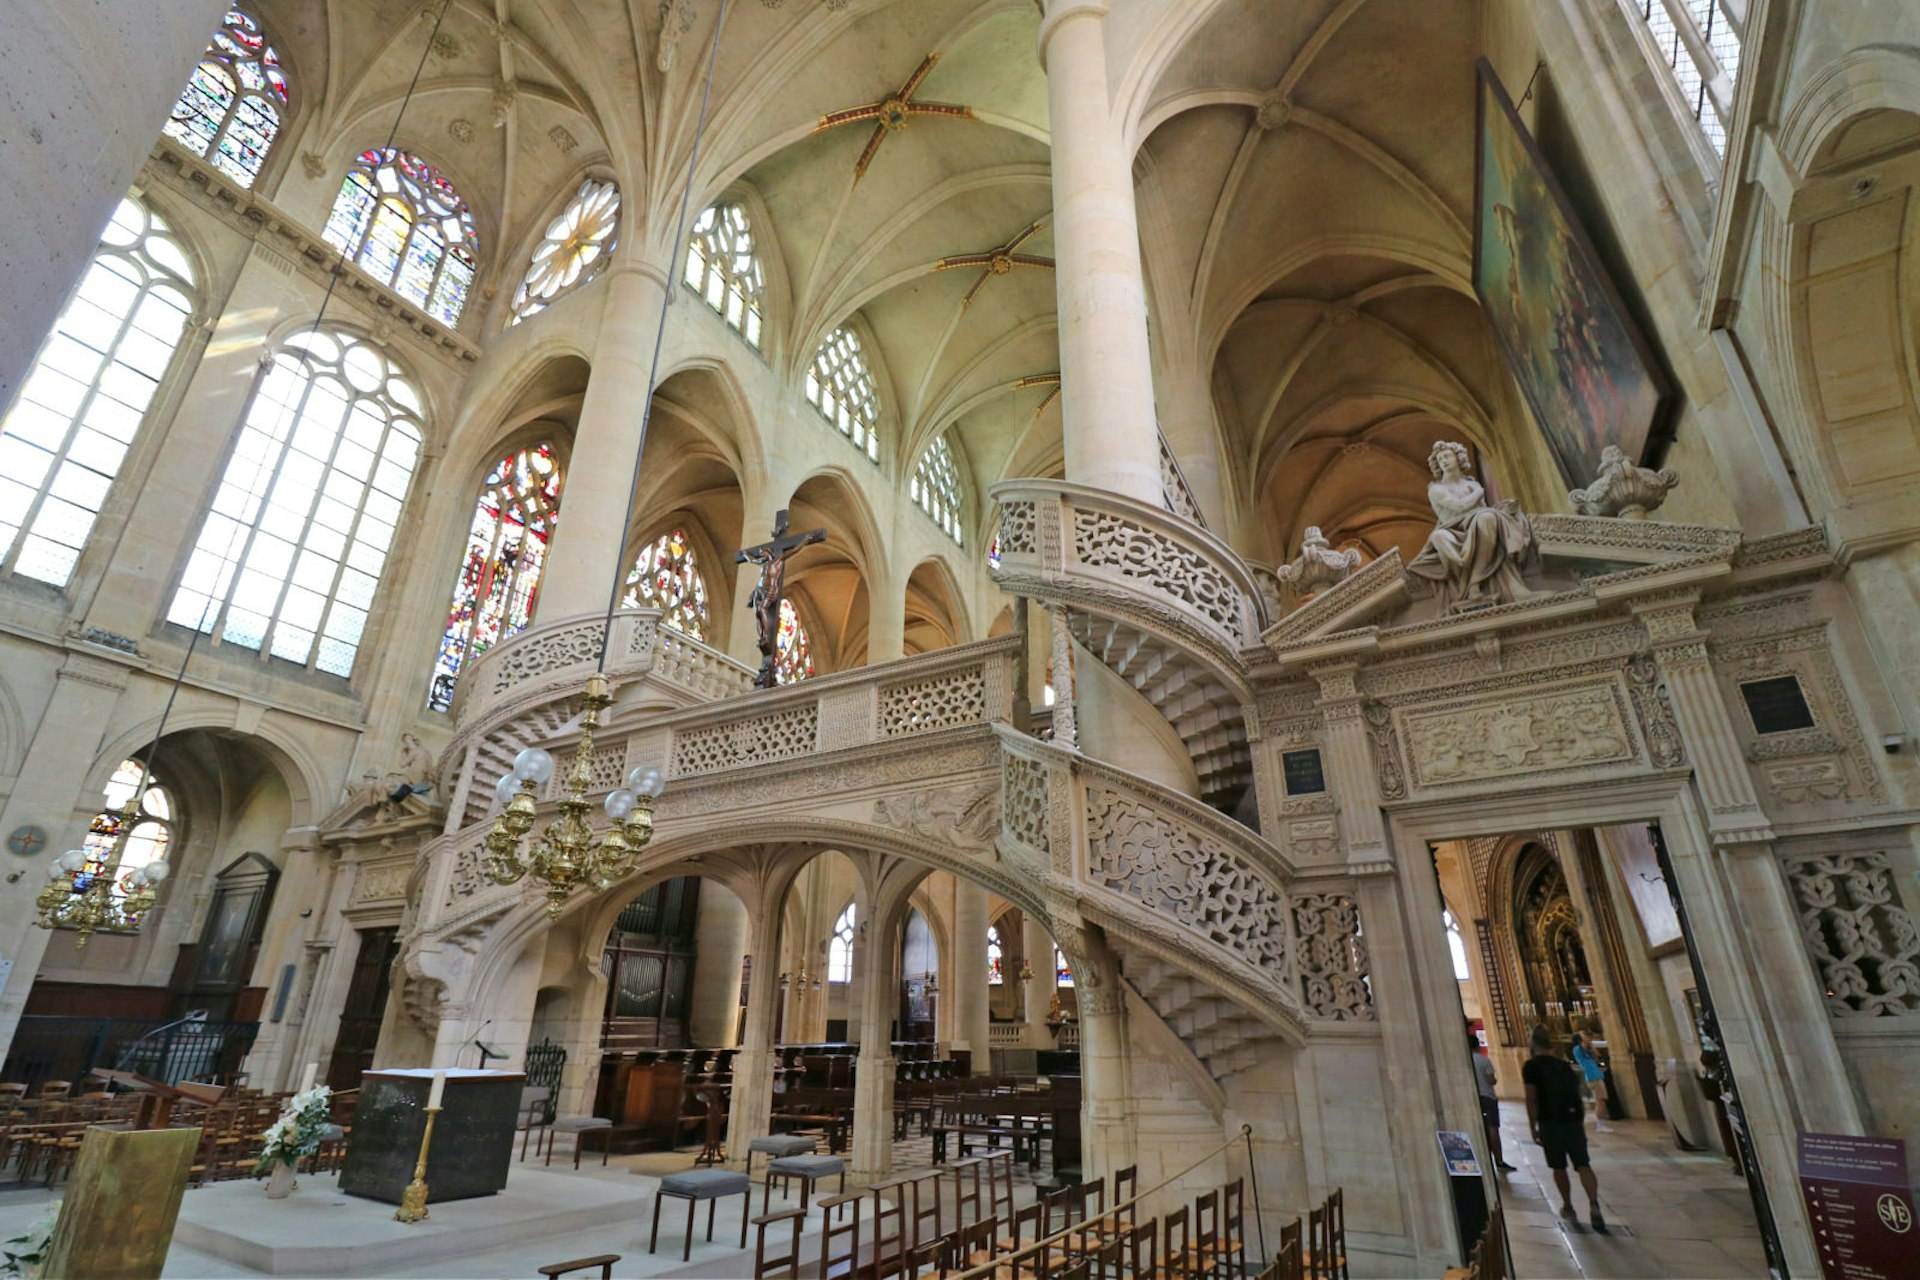 The Gothic interior of Église St-Étienne du Mont church in Paris, France